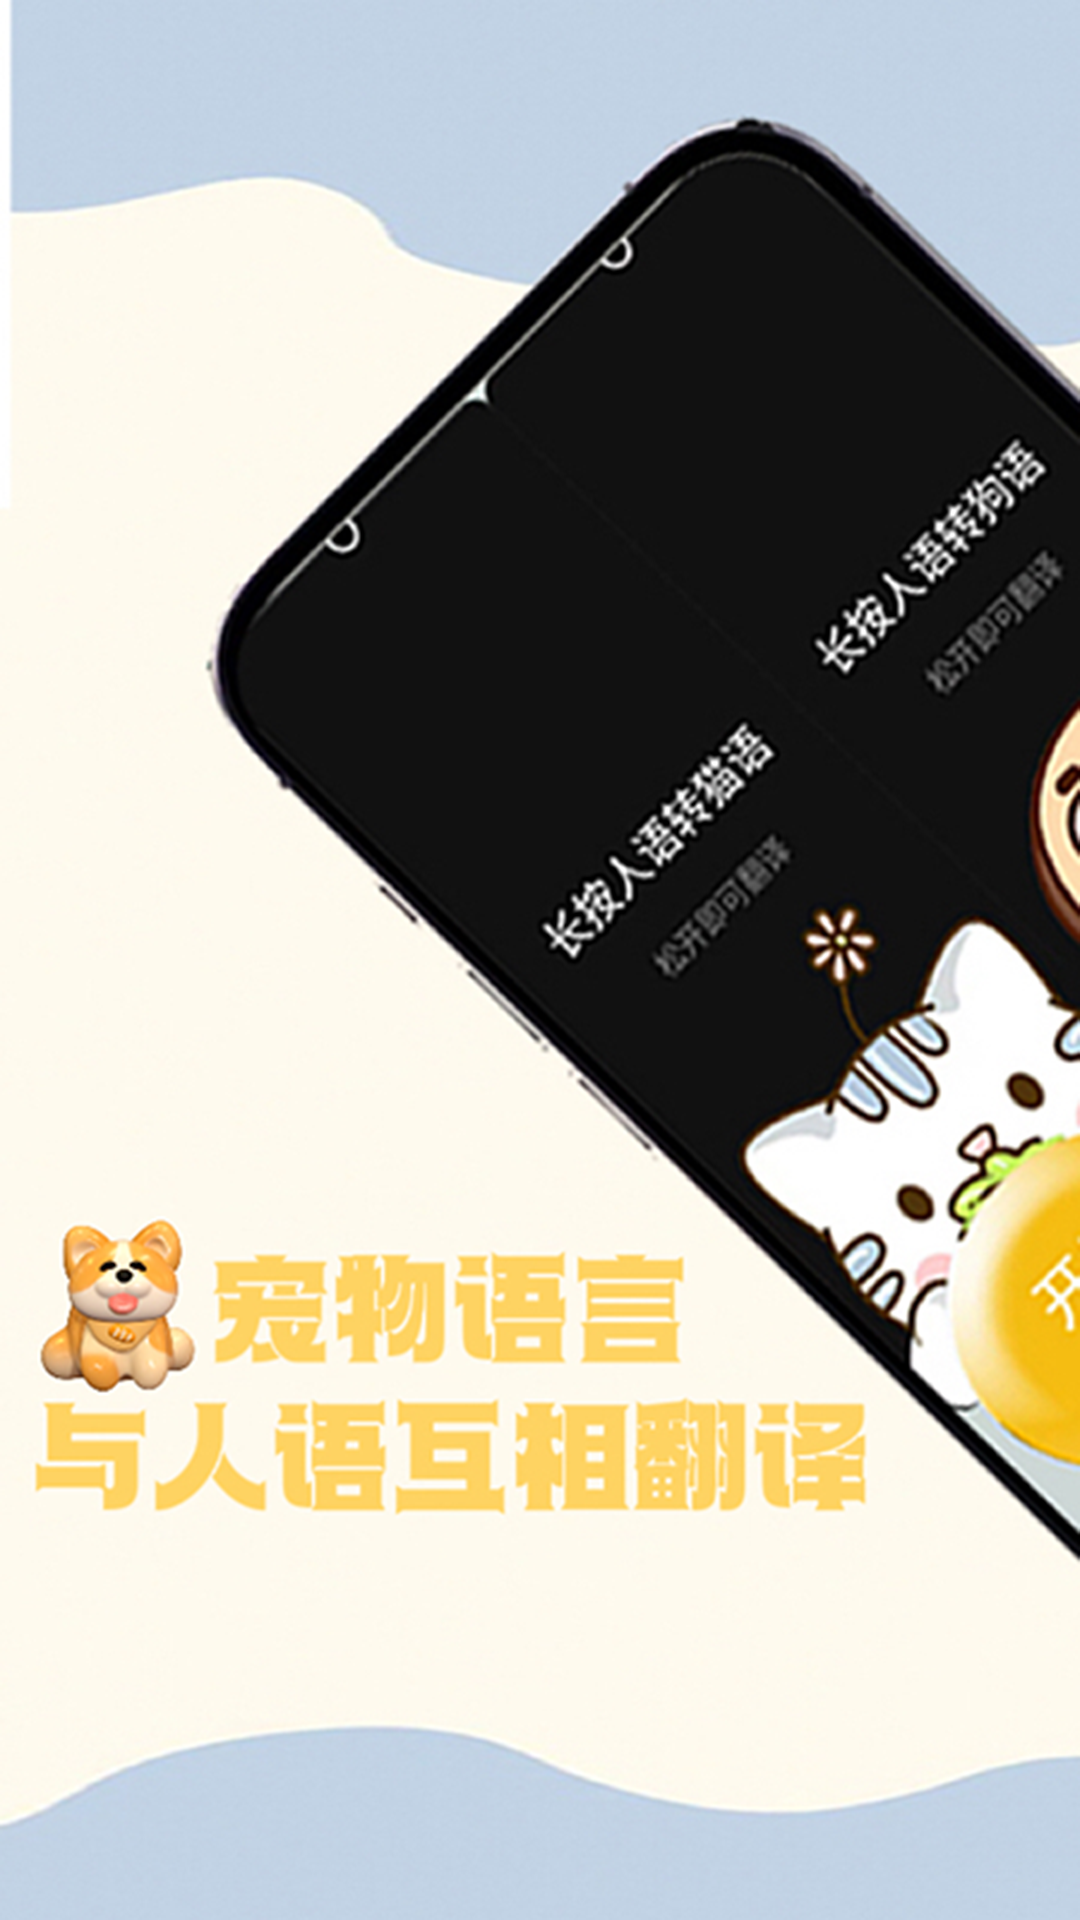 猫狗交谈翻译器app图3